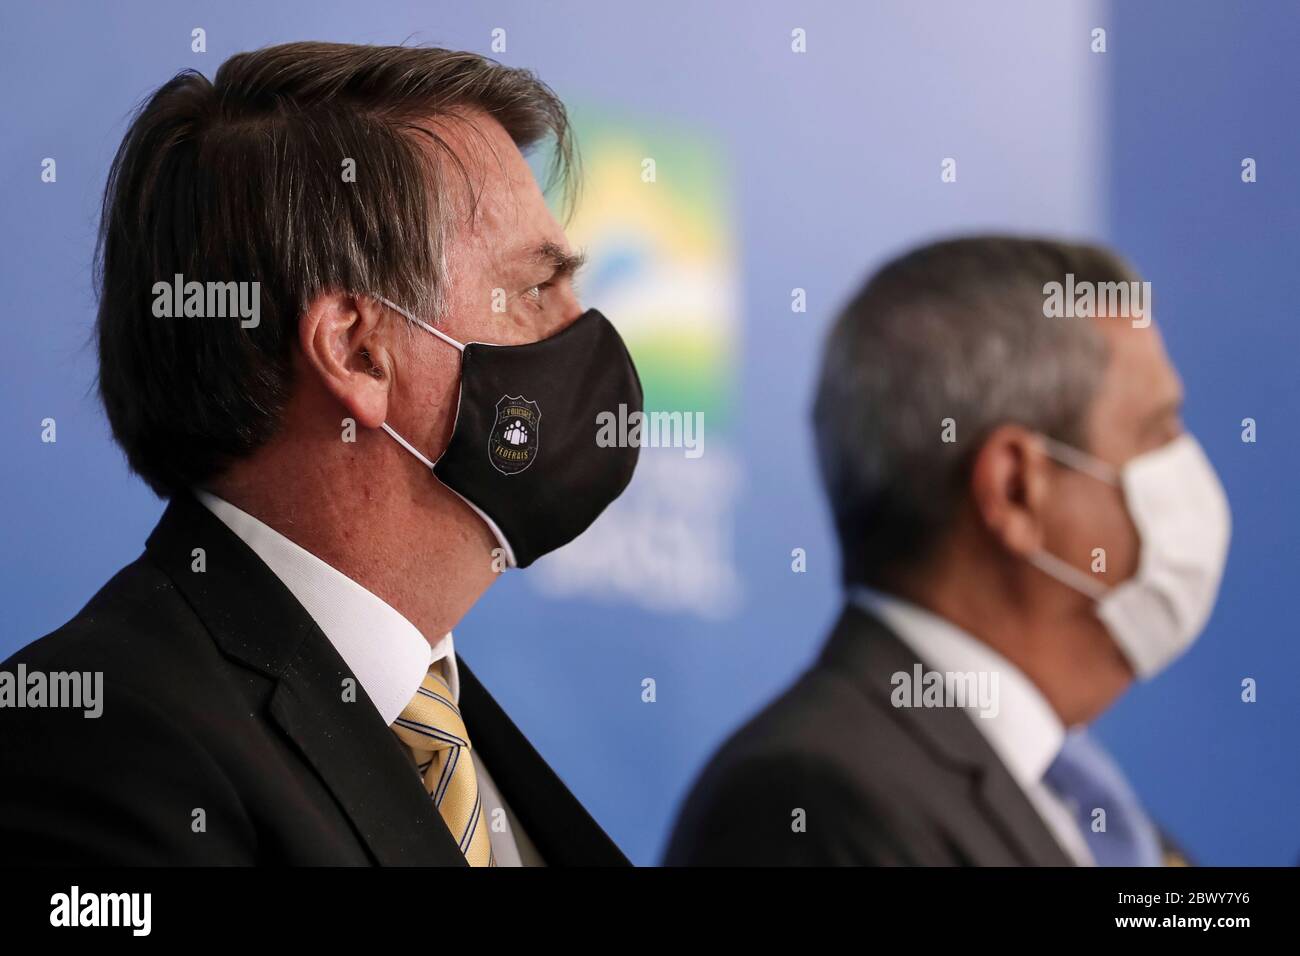 El presidente brasileño Jair Bolsonaro lleva una máscara PPE en medio de la pandemia COVID-19, durante un evento que promueve una campaña gubernamental contra la violencia doméstica en el palacio presidencial de Planalto el 15 de mayo de 2020 en Brasilia, Brasil. Foto de stock